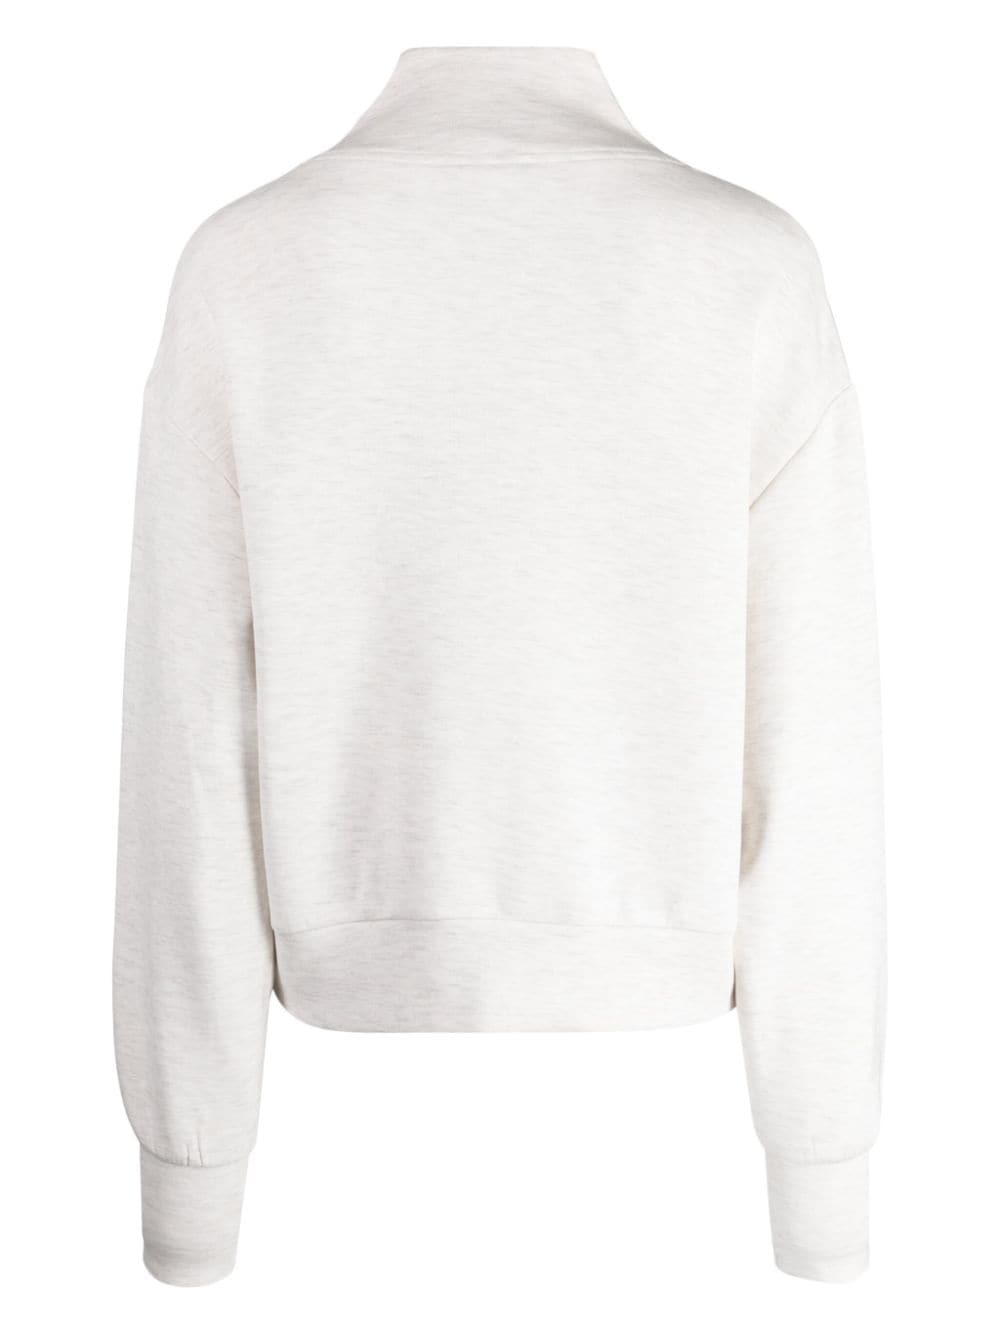 Shop Varley Davidson Zipped Sweatshirt In White